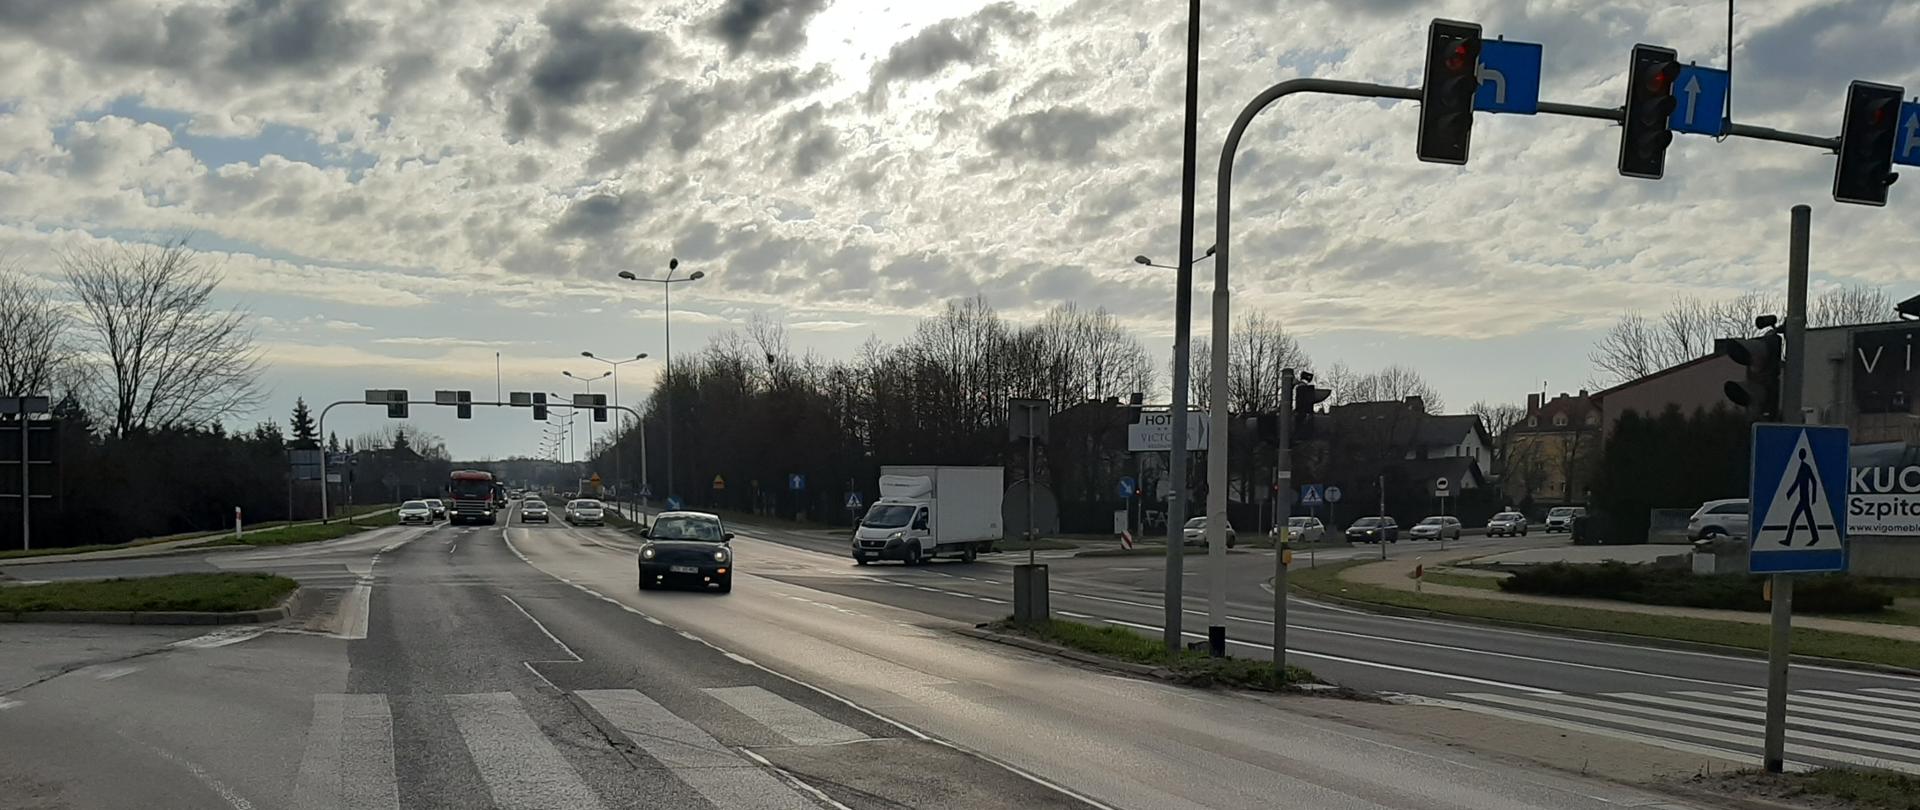 DK94 w Olkuszu, skrzyżowanie z sygnalizacją świetlną i przejściami dla pieszych